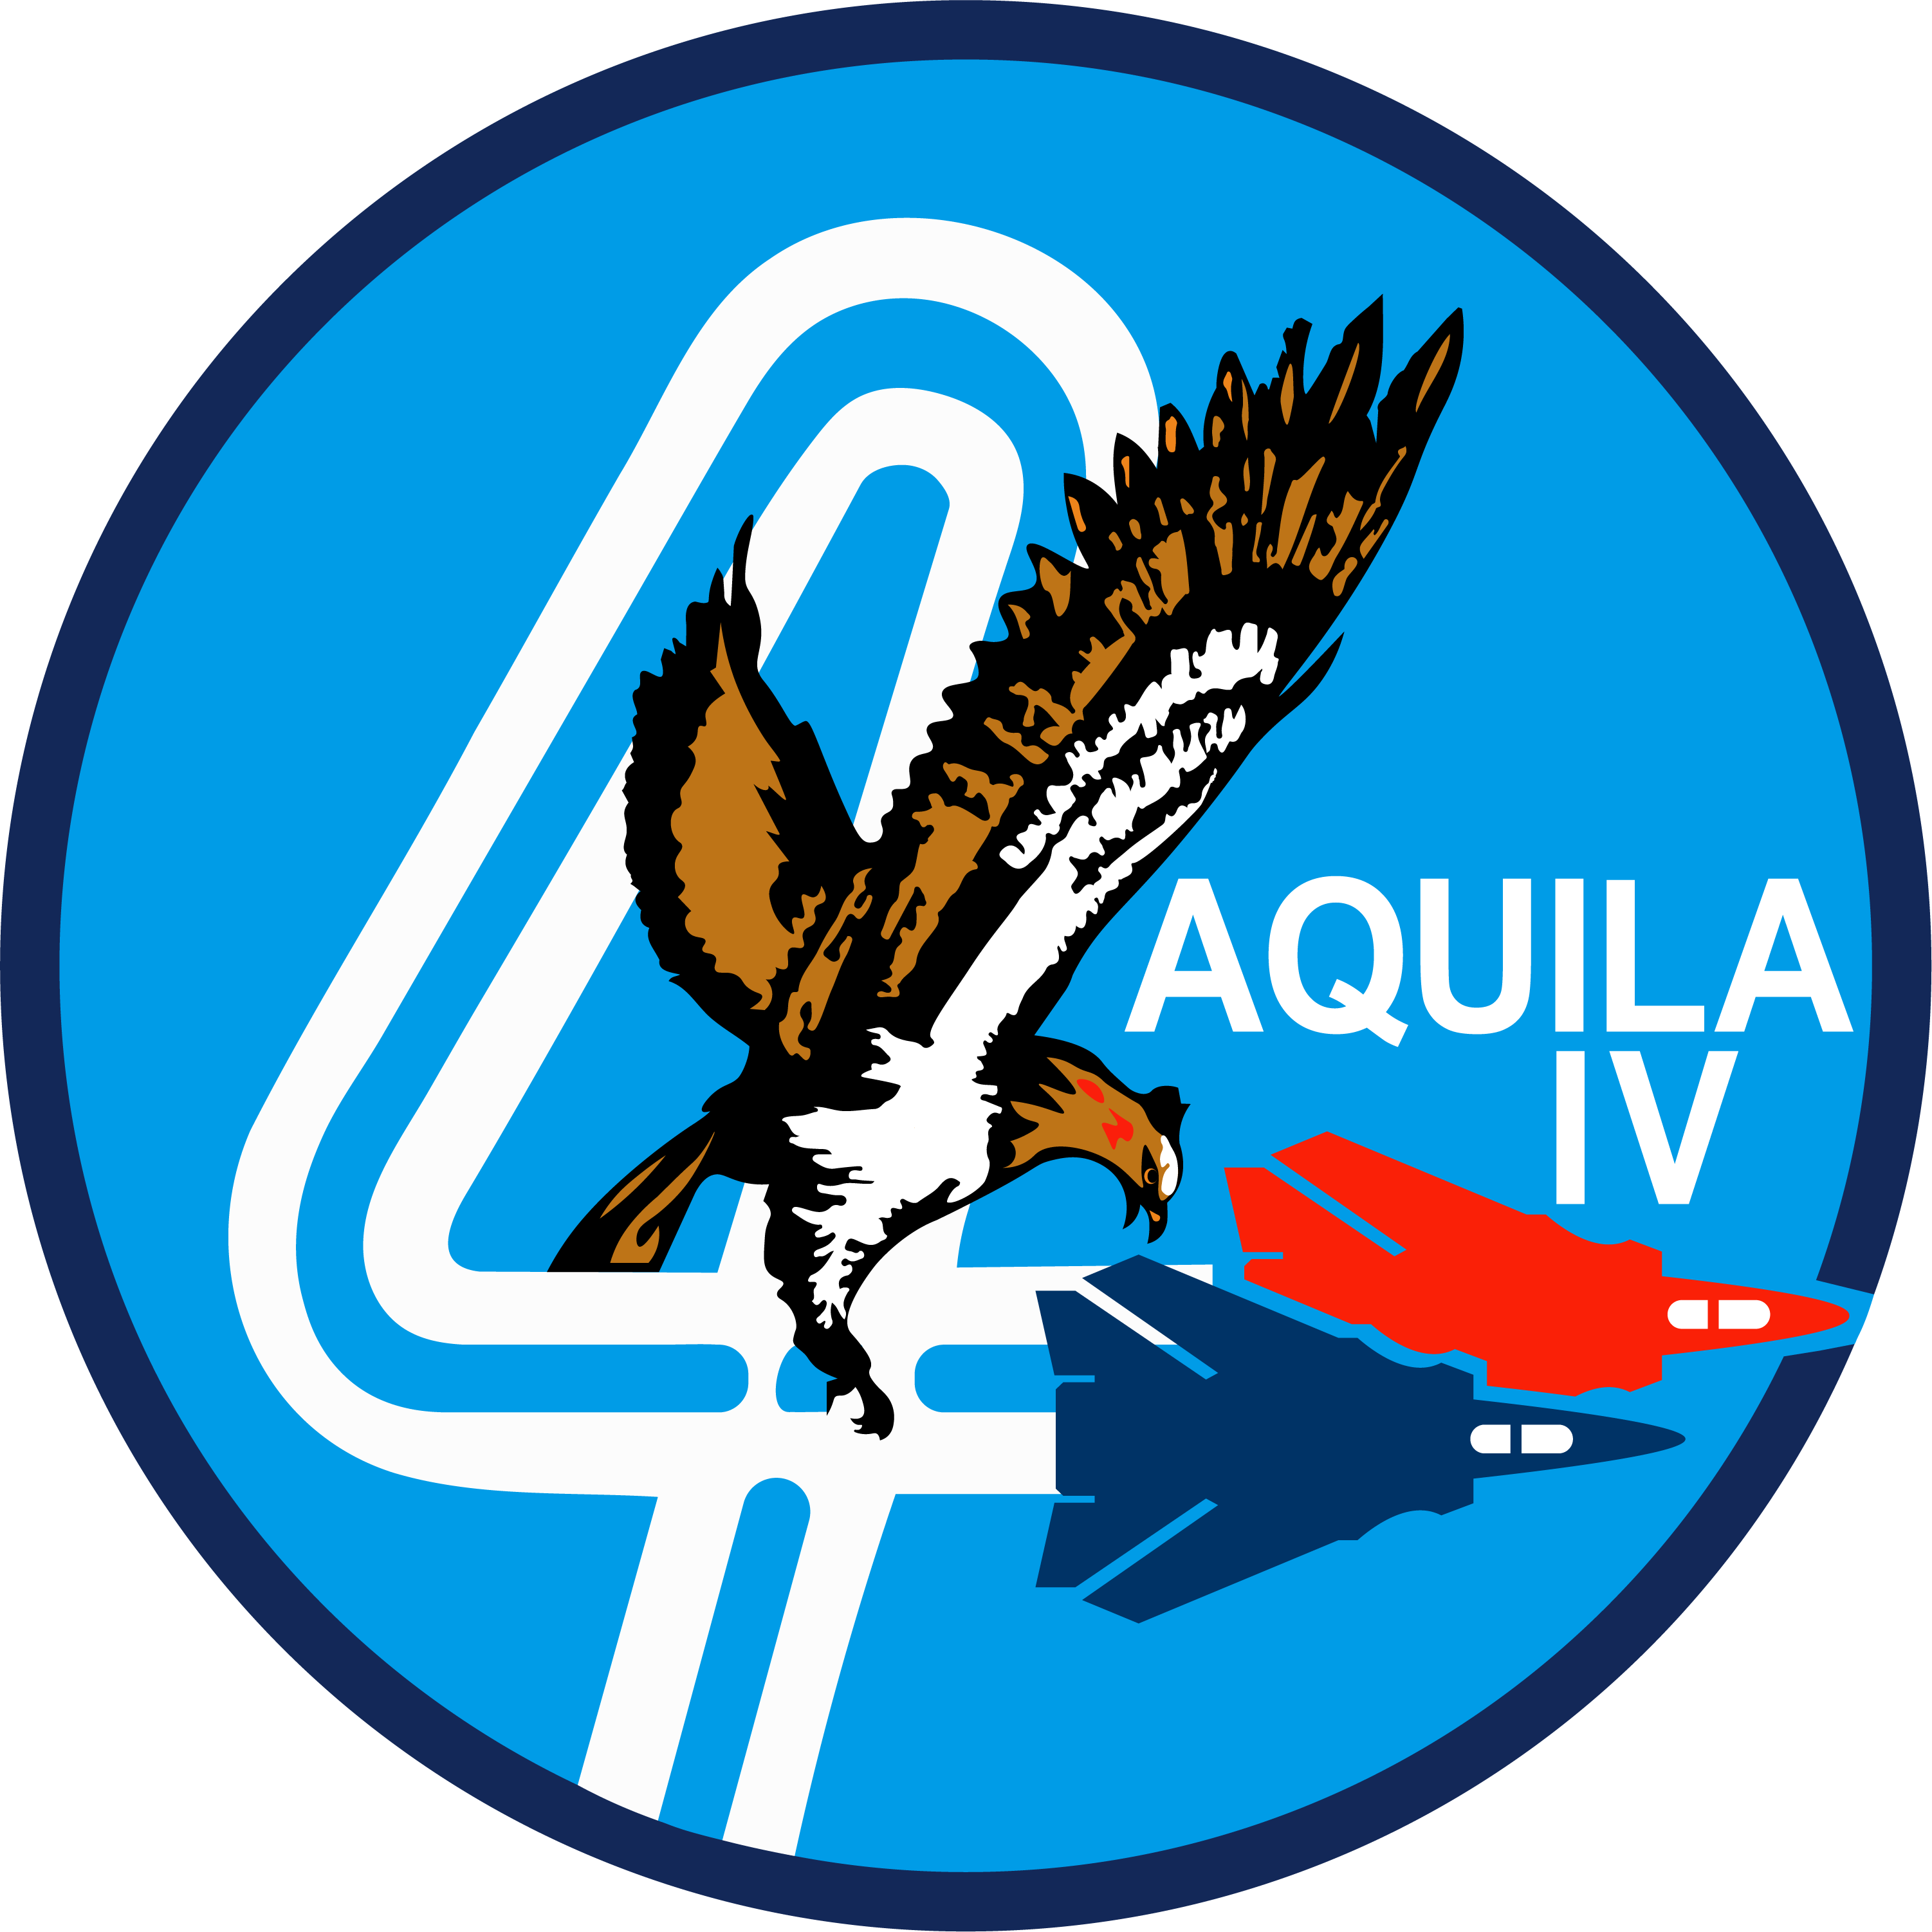 Aquila IV